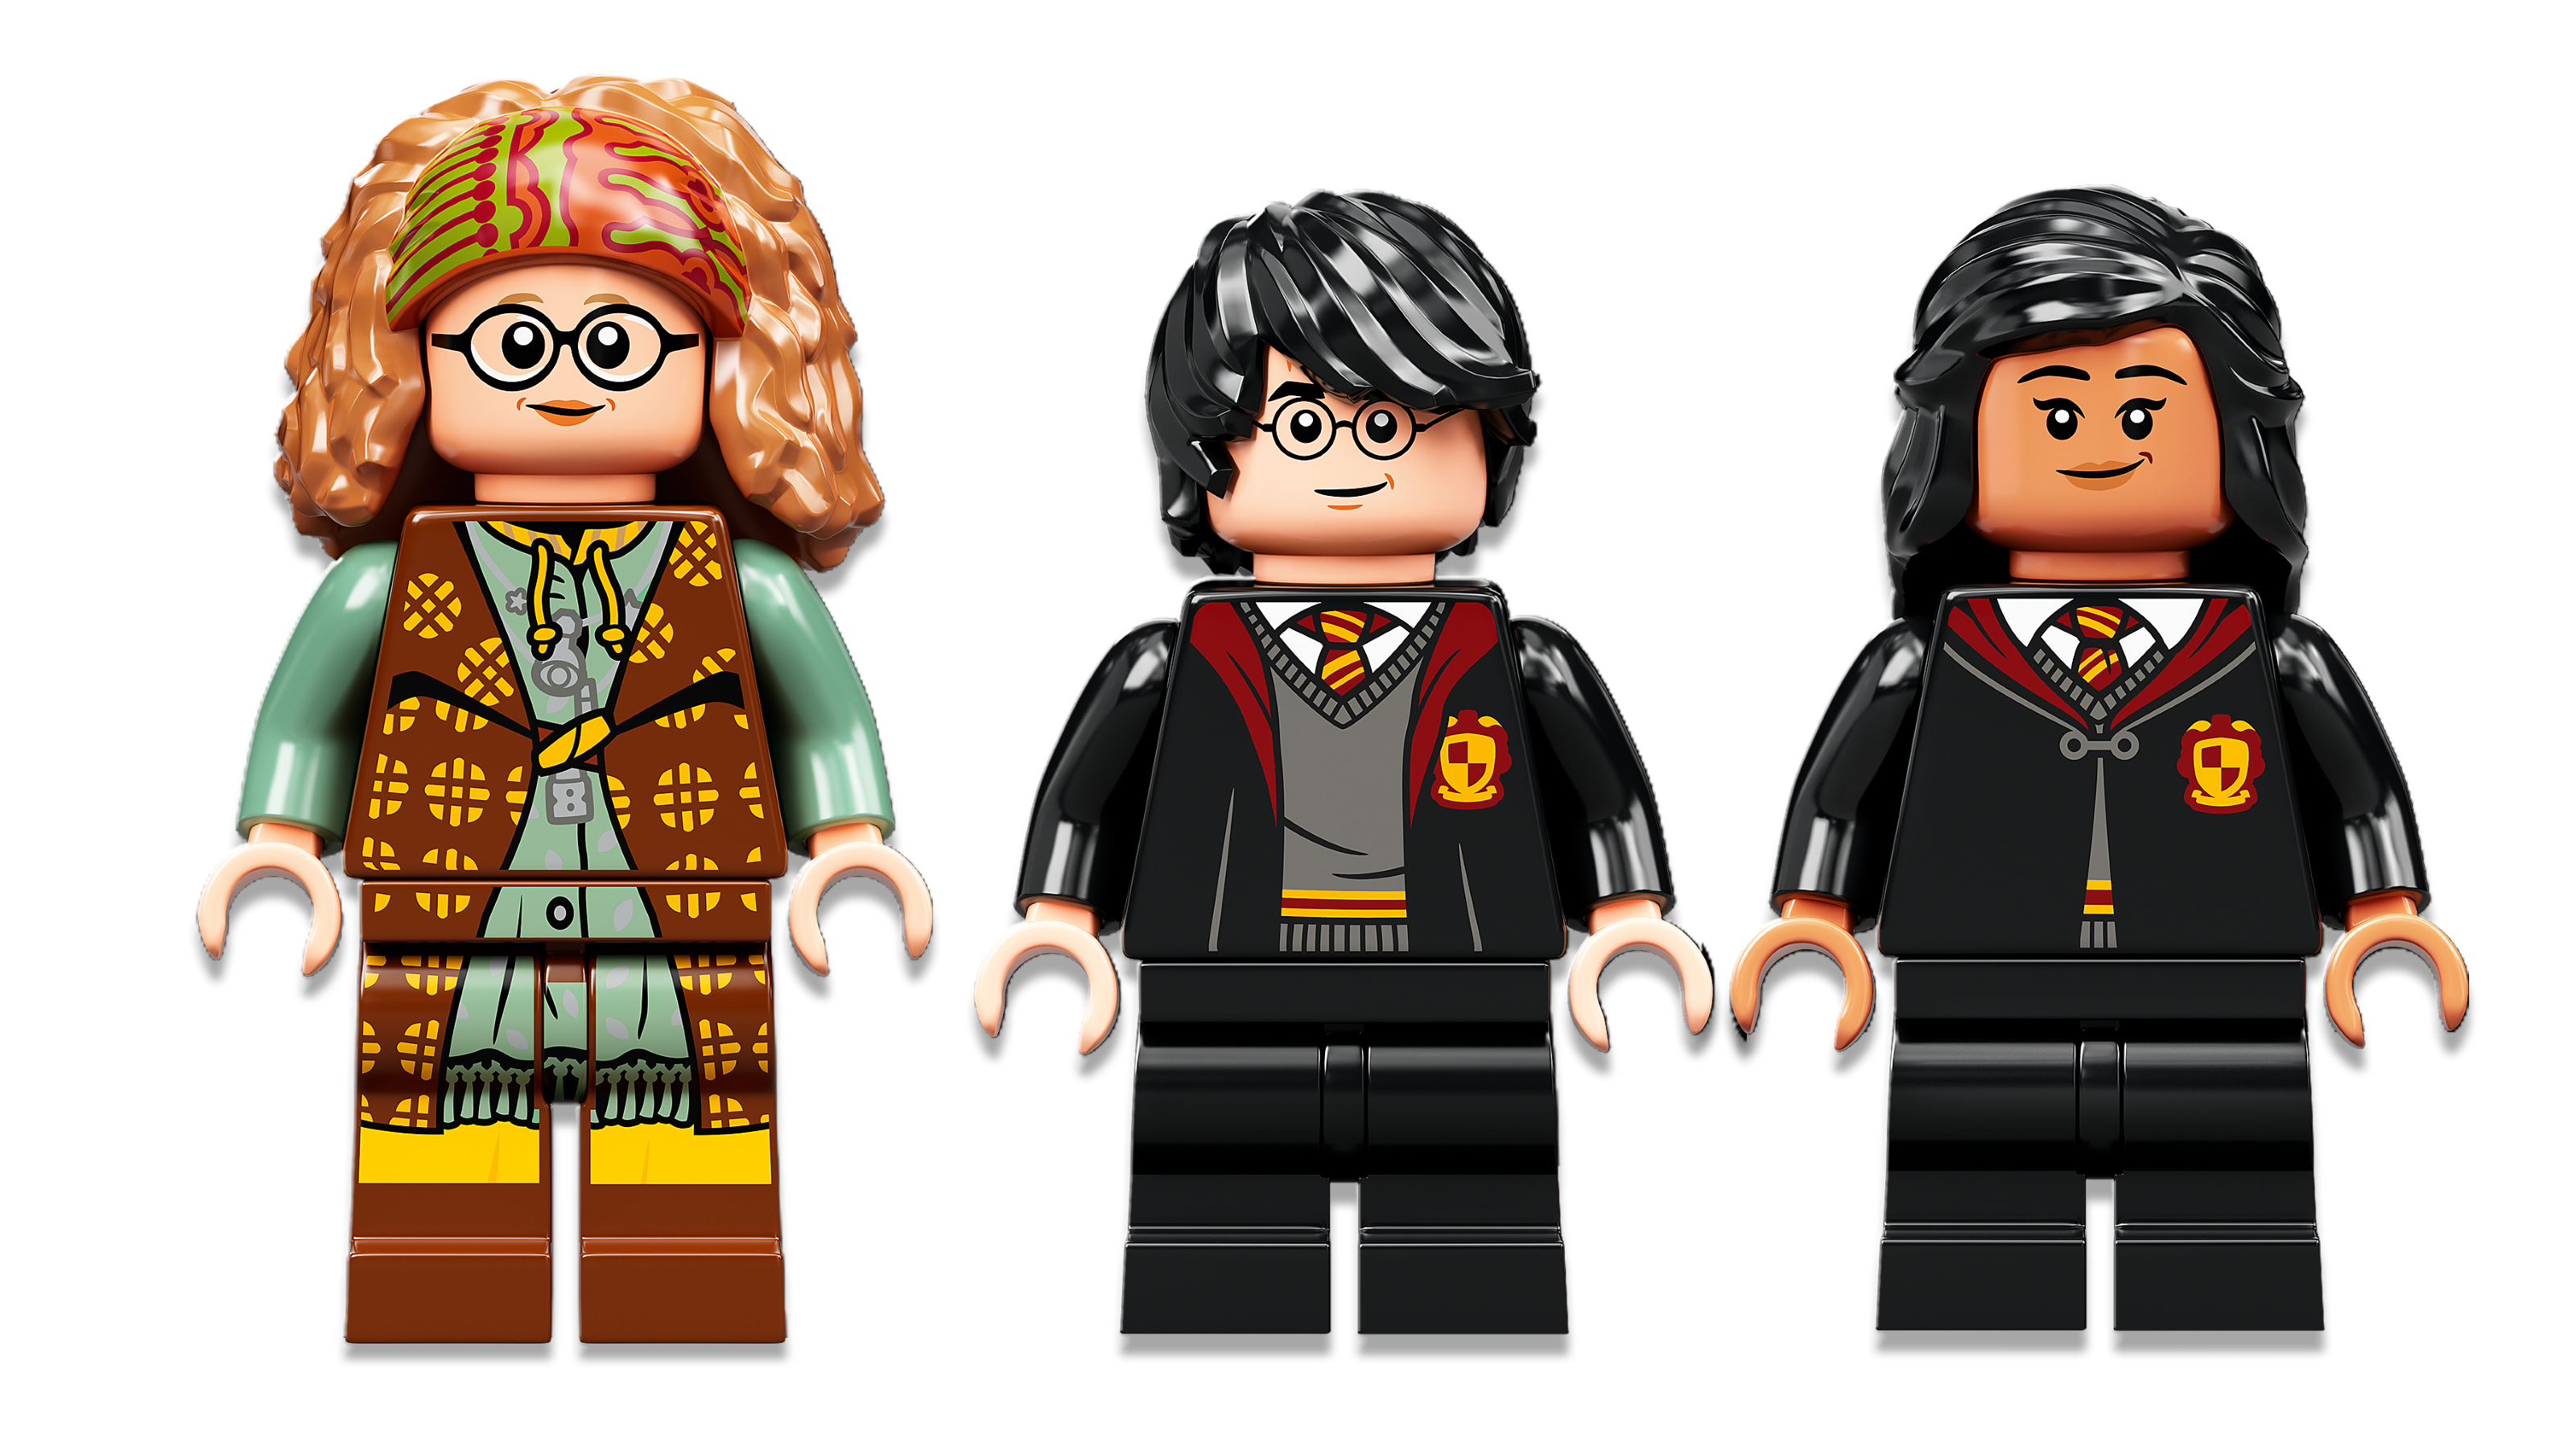 LEGO Harry Potter - O Castelo de Hogwarts - Dular